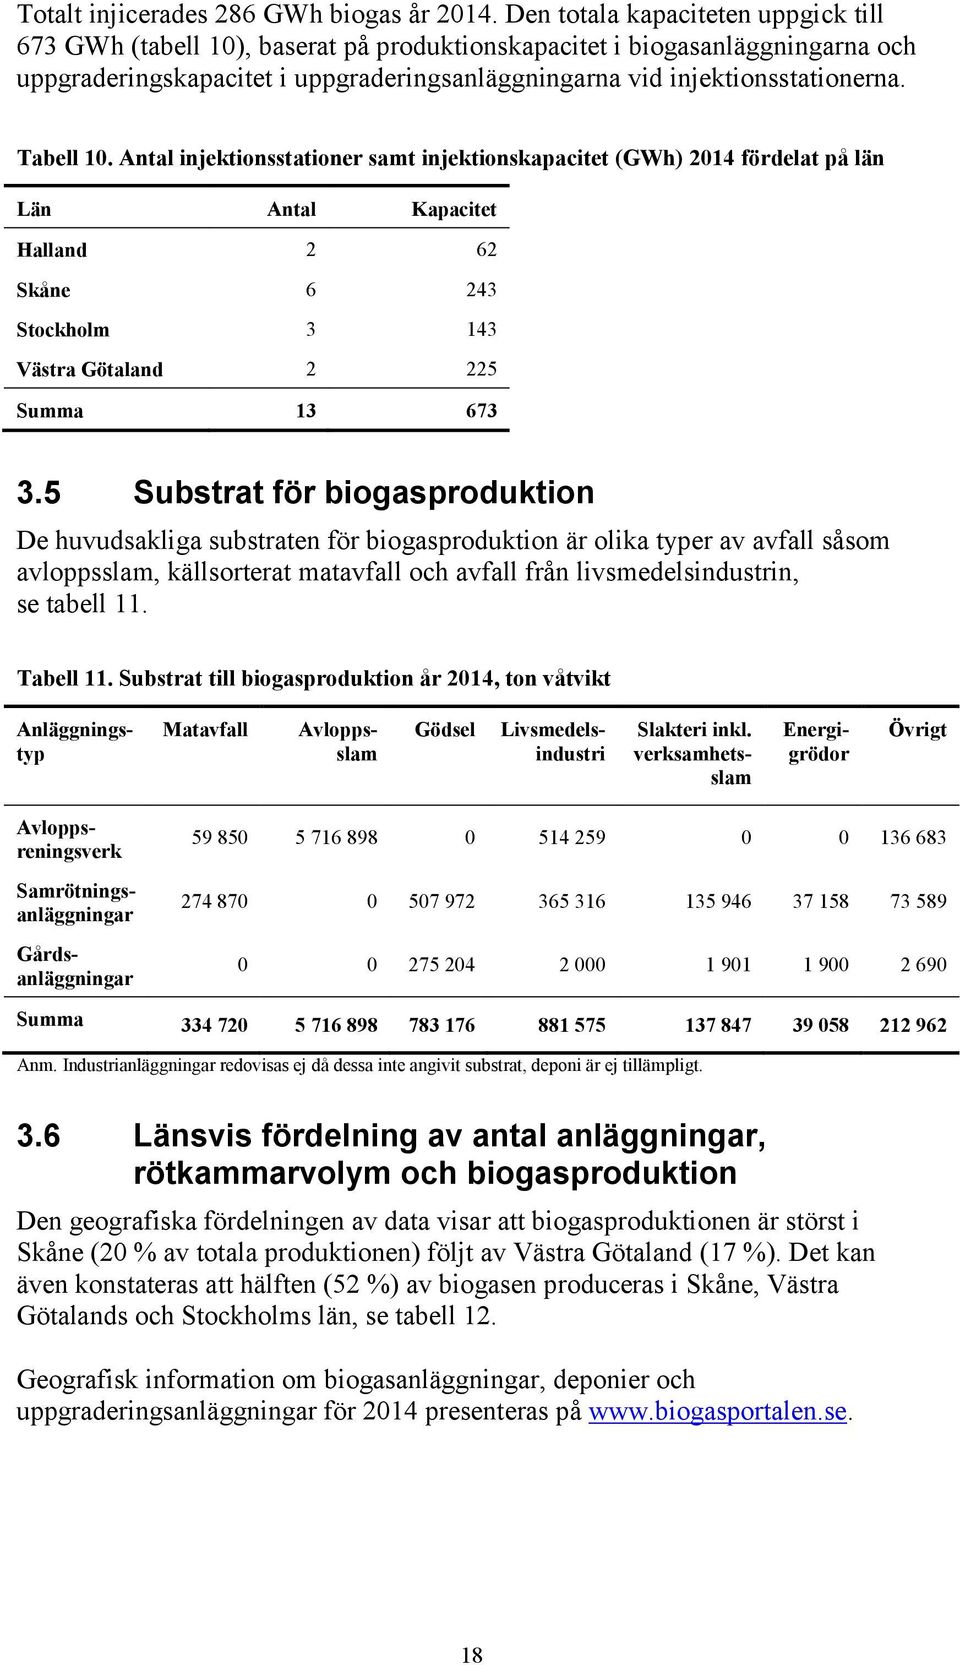 Tabell 10. Antal injektionsstationer samt injektionskapacitet (GWh) 2014 fördelat på län Län Antal Kapacitet Halland 2 62 Skåne 6 243 Stockholm 3 143 Västra Götaland 2 225 Summa 13 673 3.